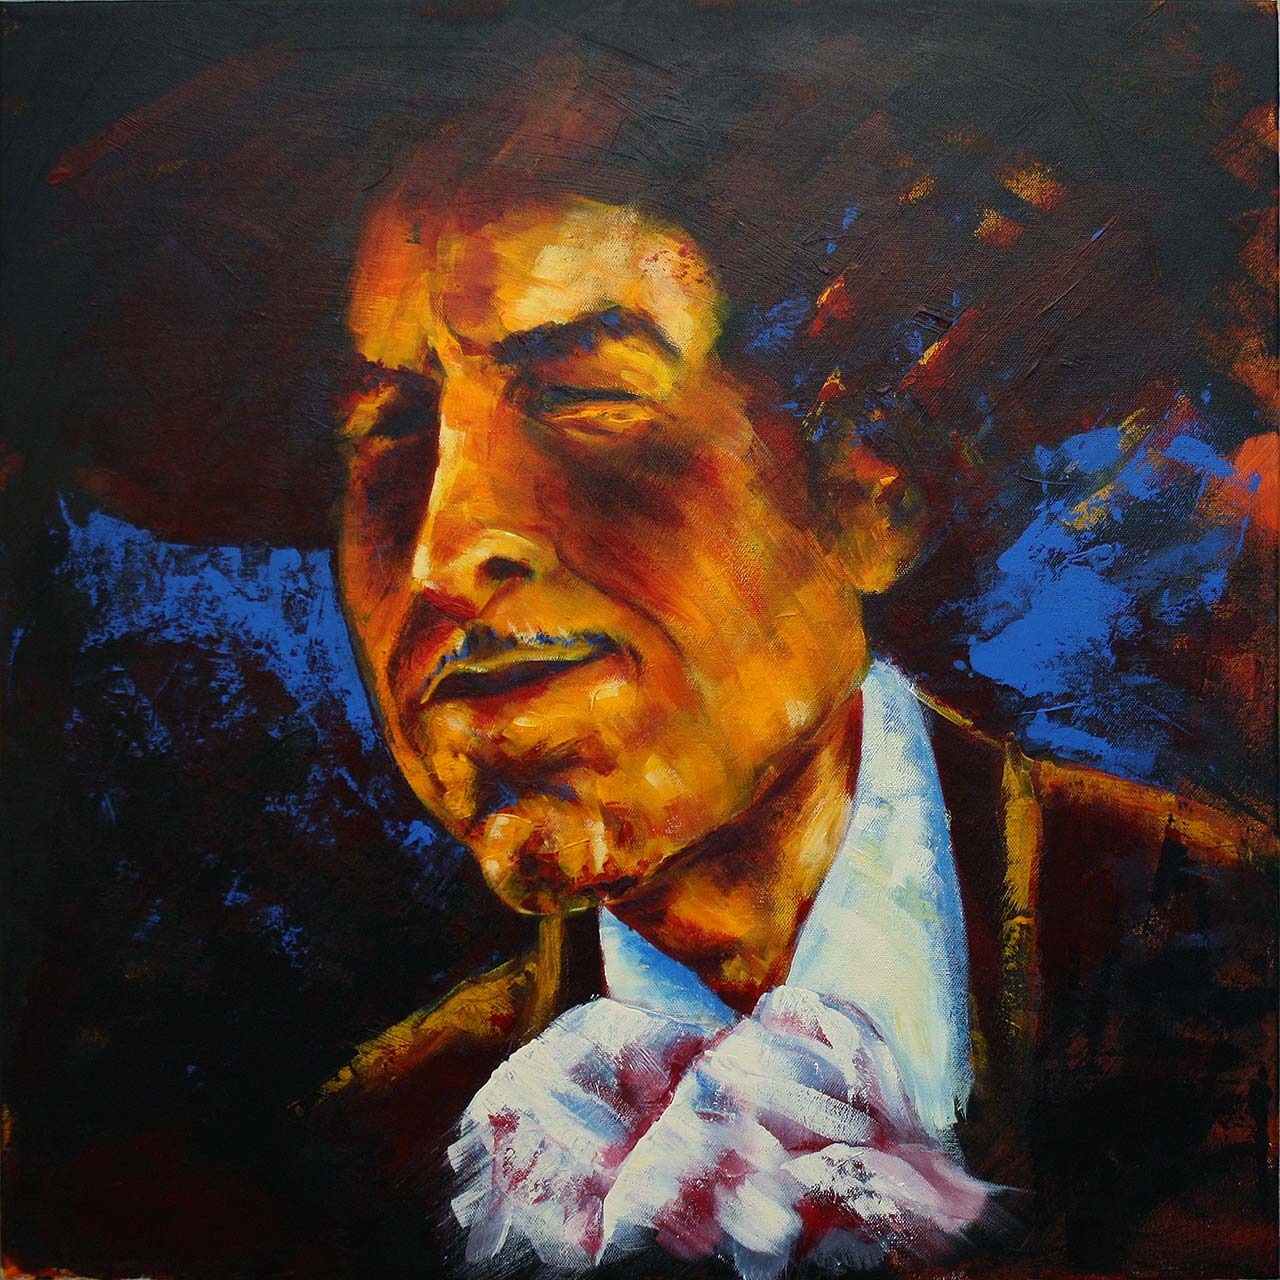 Portrætmaleri af Bob Dylan udført af portrætmaler Peter Simonsen. Portrættte er malet i 2012-2013.